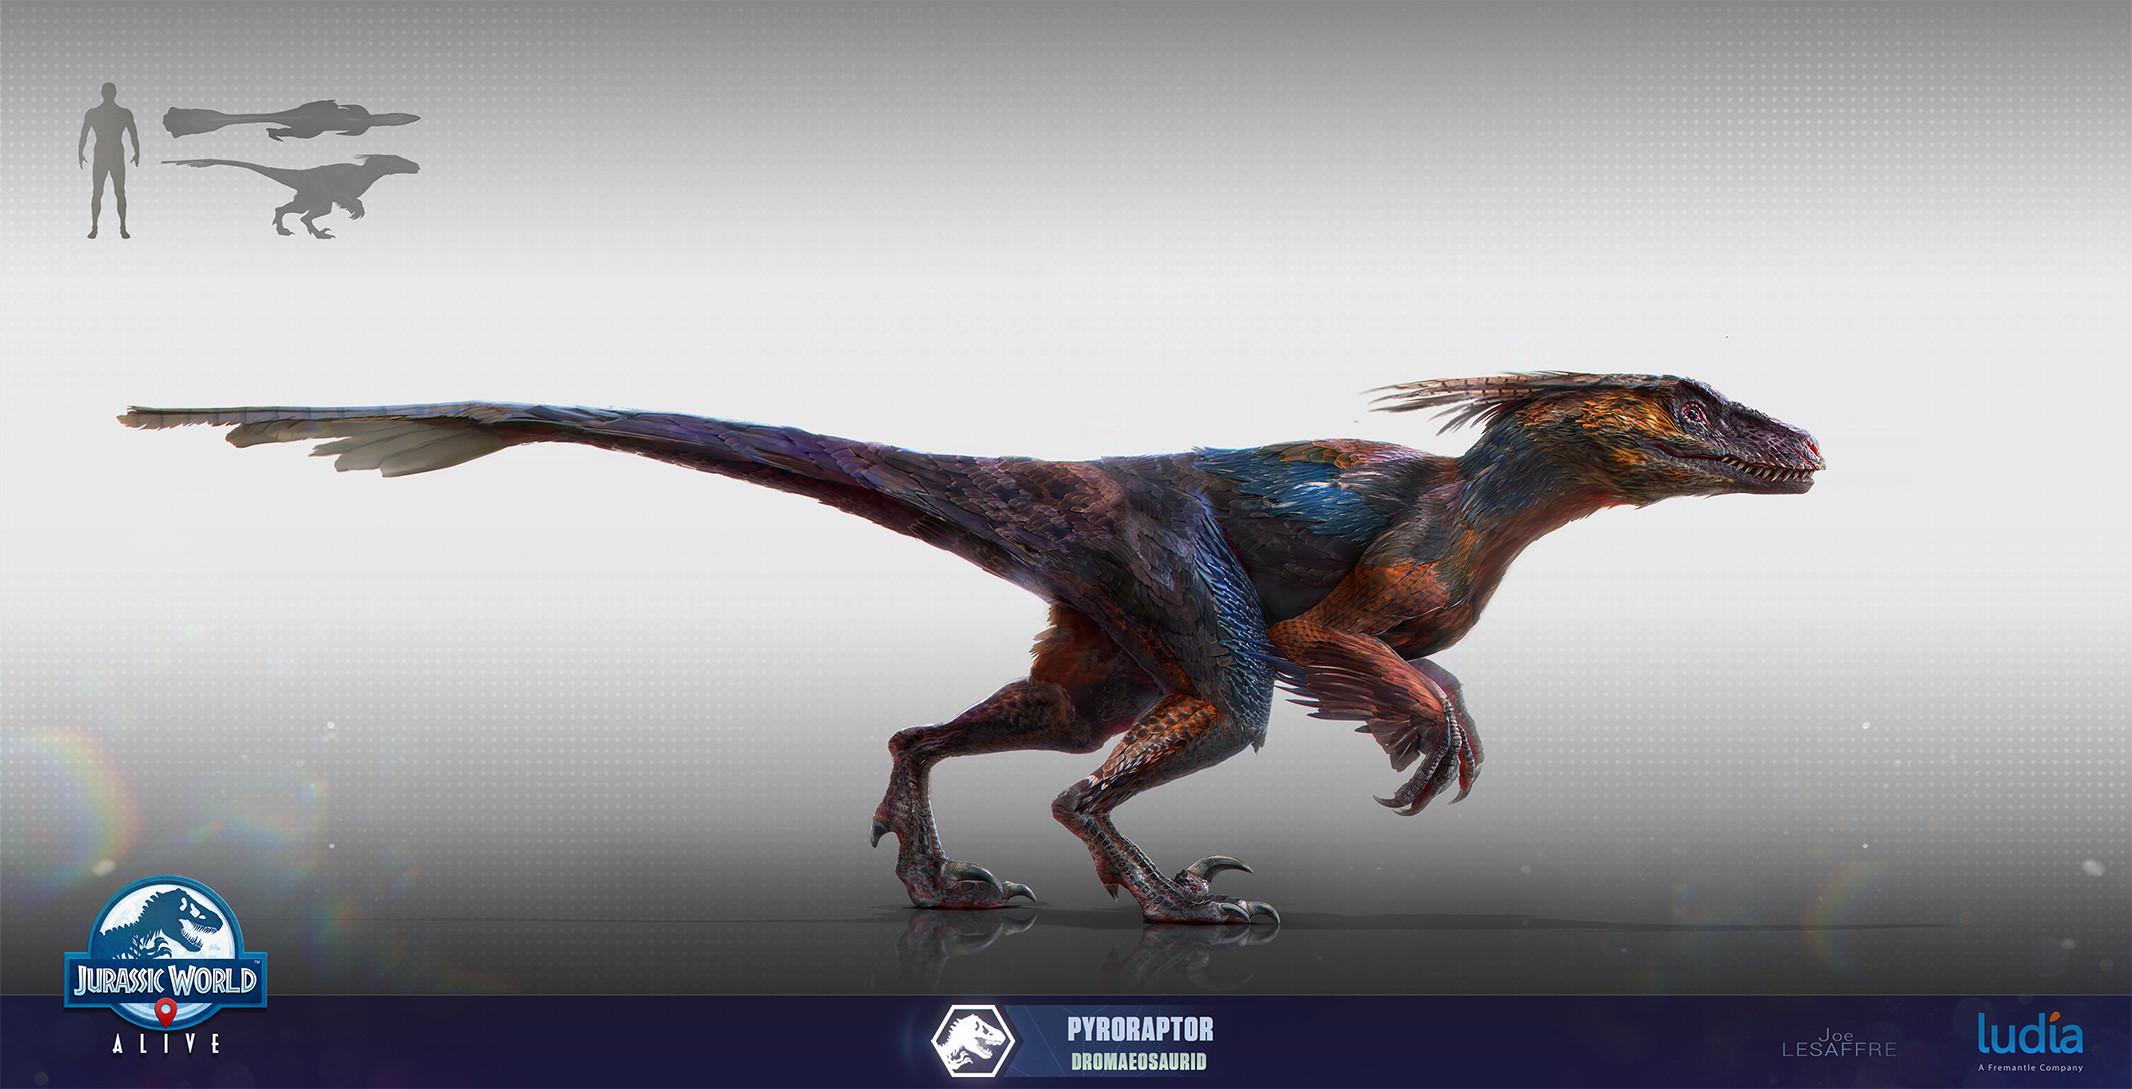 Pyroraptor